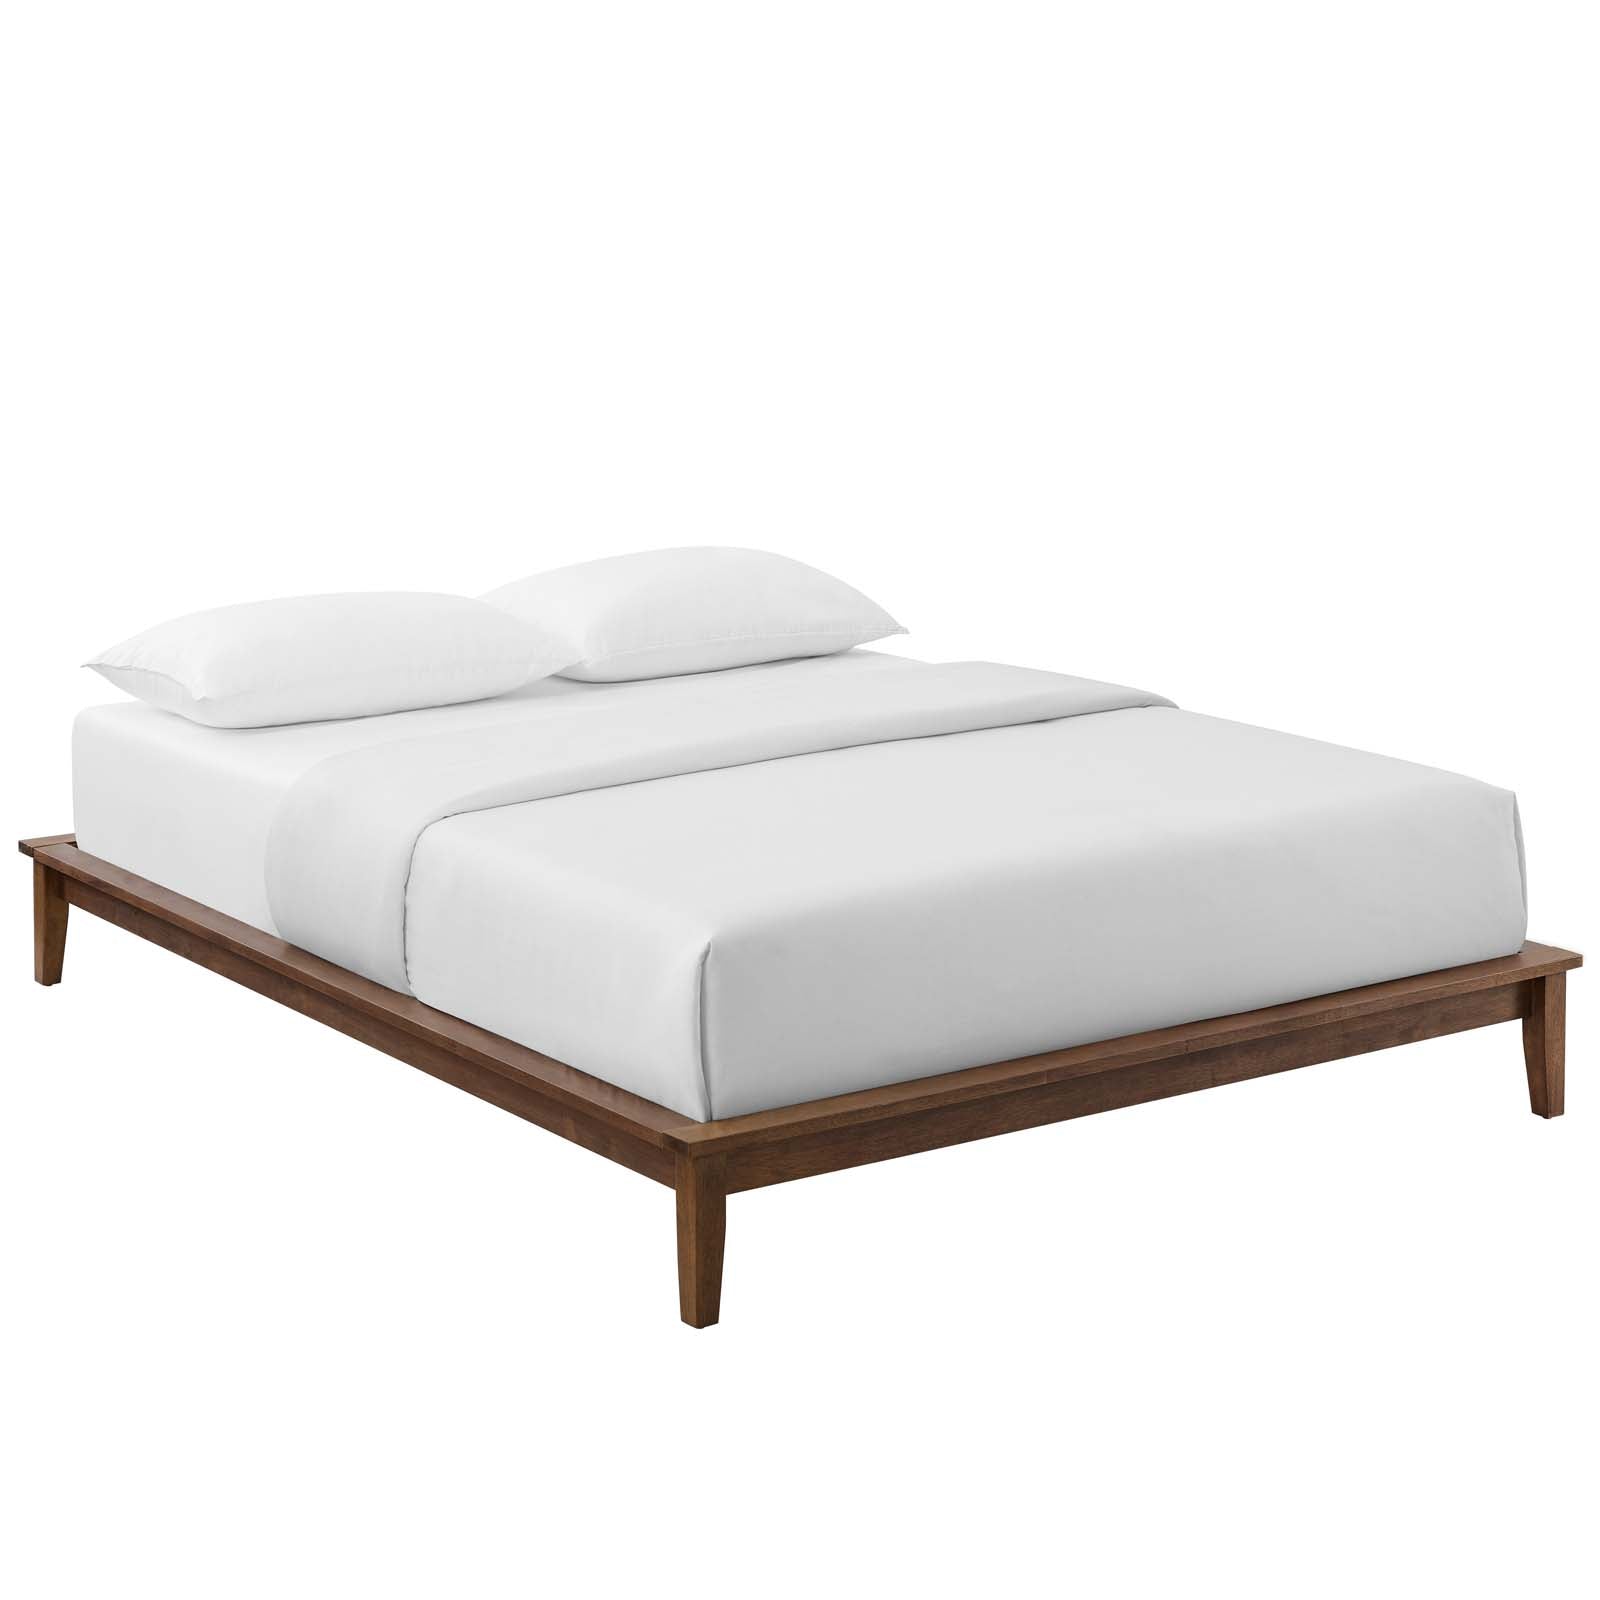 Modway Furniture Modern Lodge King Wood Platform Bed Frame - MOD-6056